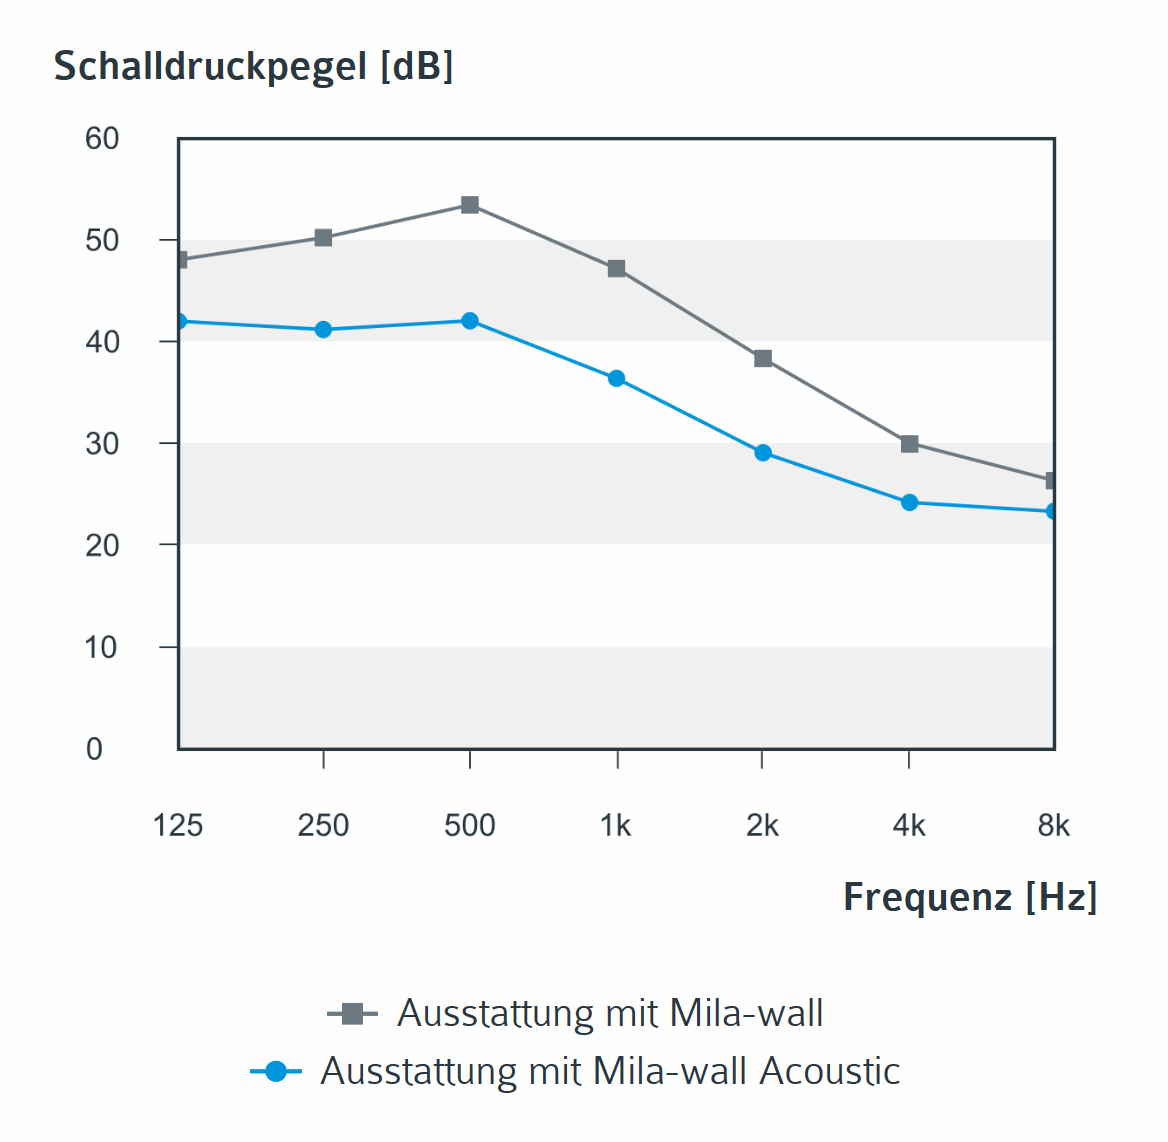 Diagramm zum Schalldruckpegel beim Einsatz von Mila-wall und Mila-wall Acoustic